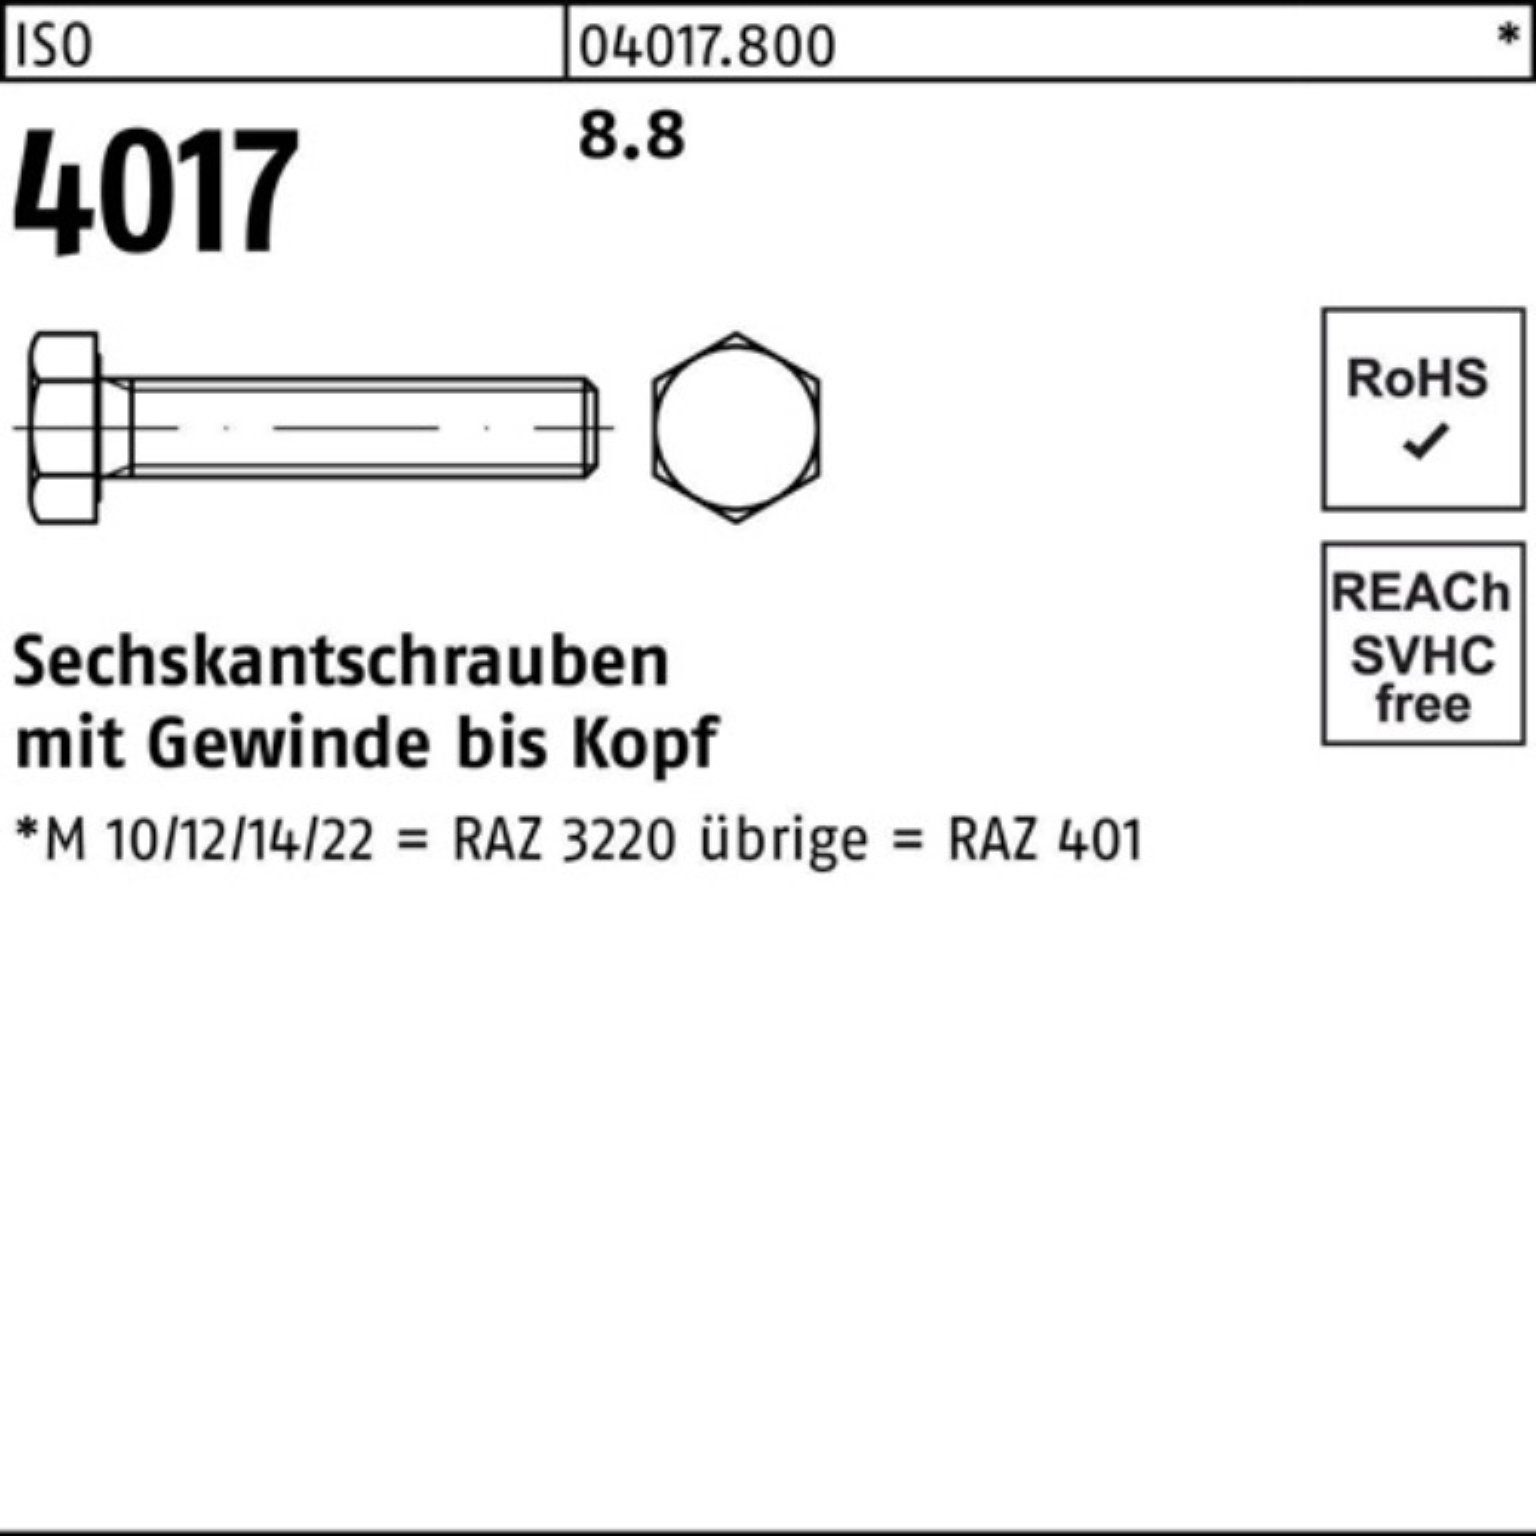 Bufab Sechskantschraube 100er Pack Sechskantschraube 4017 ISO 1 ISO 150 401 8.8 Stück M30x VG